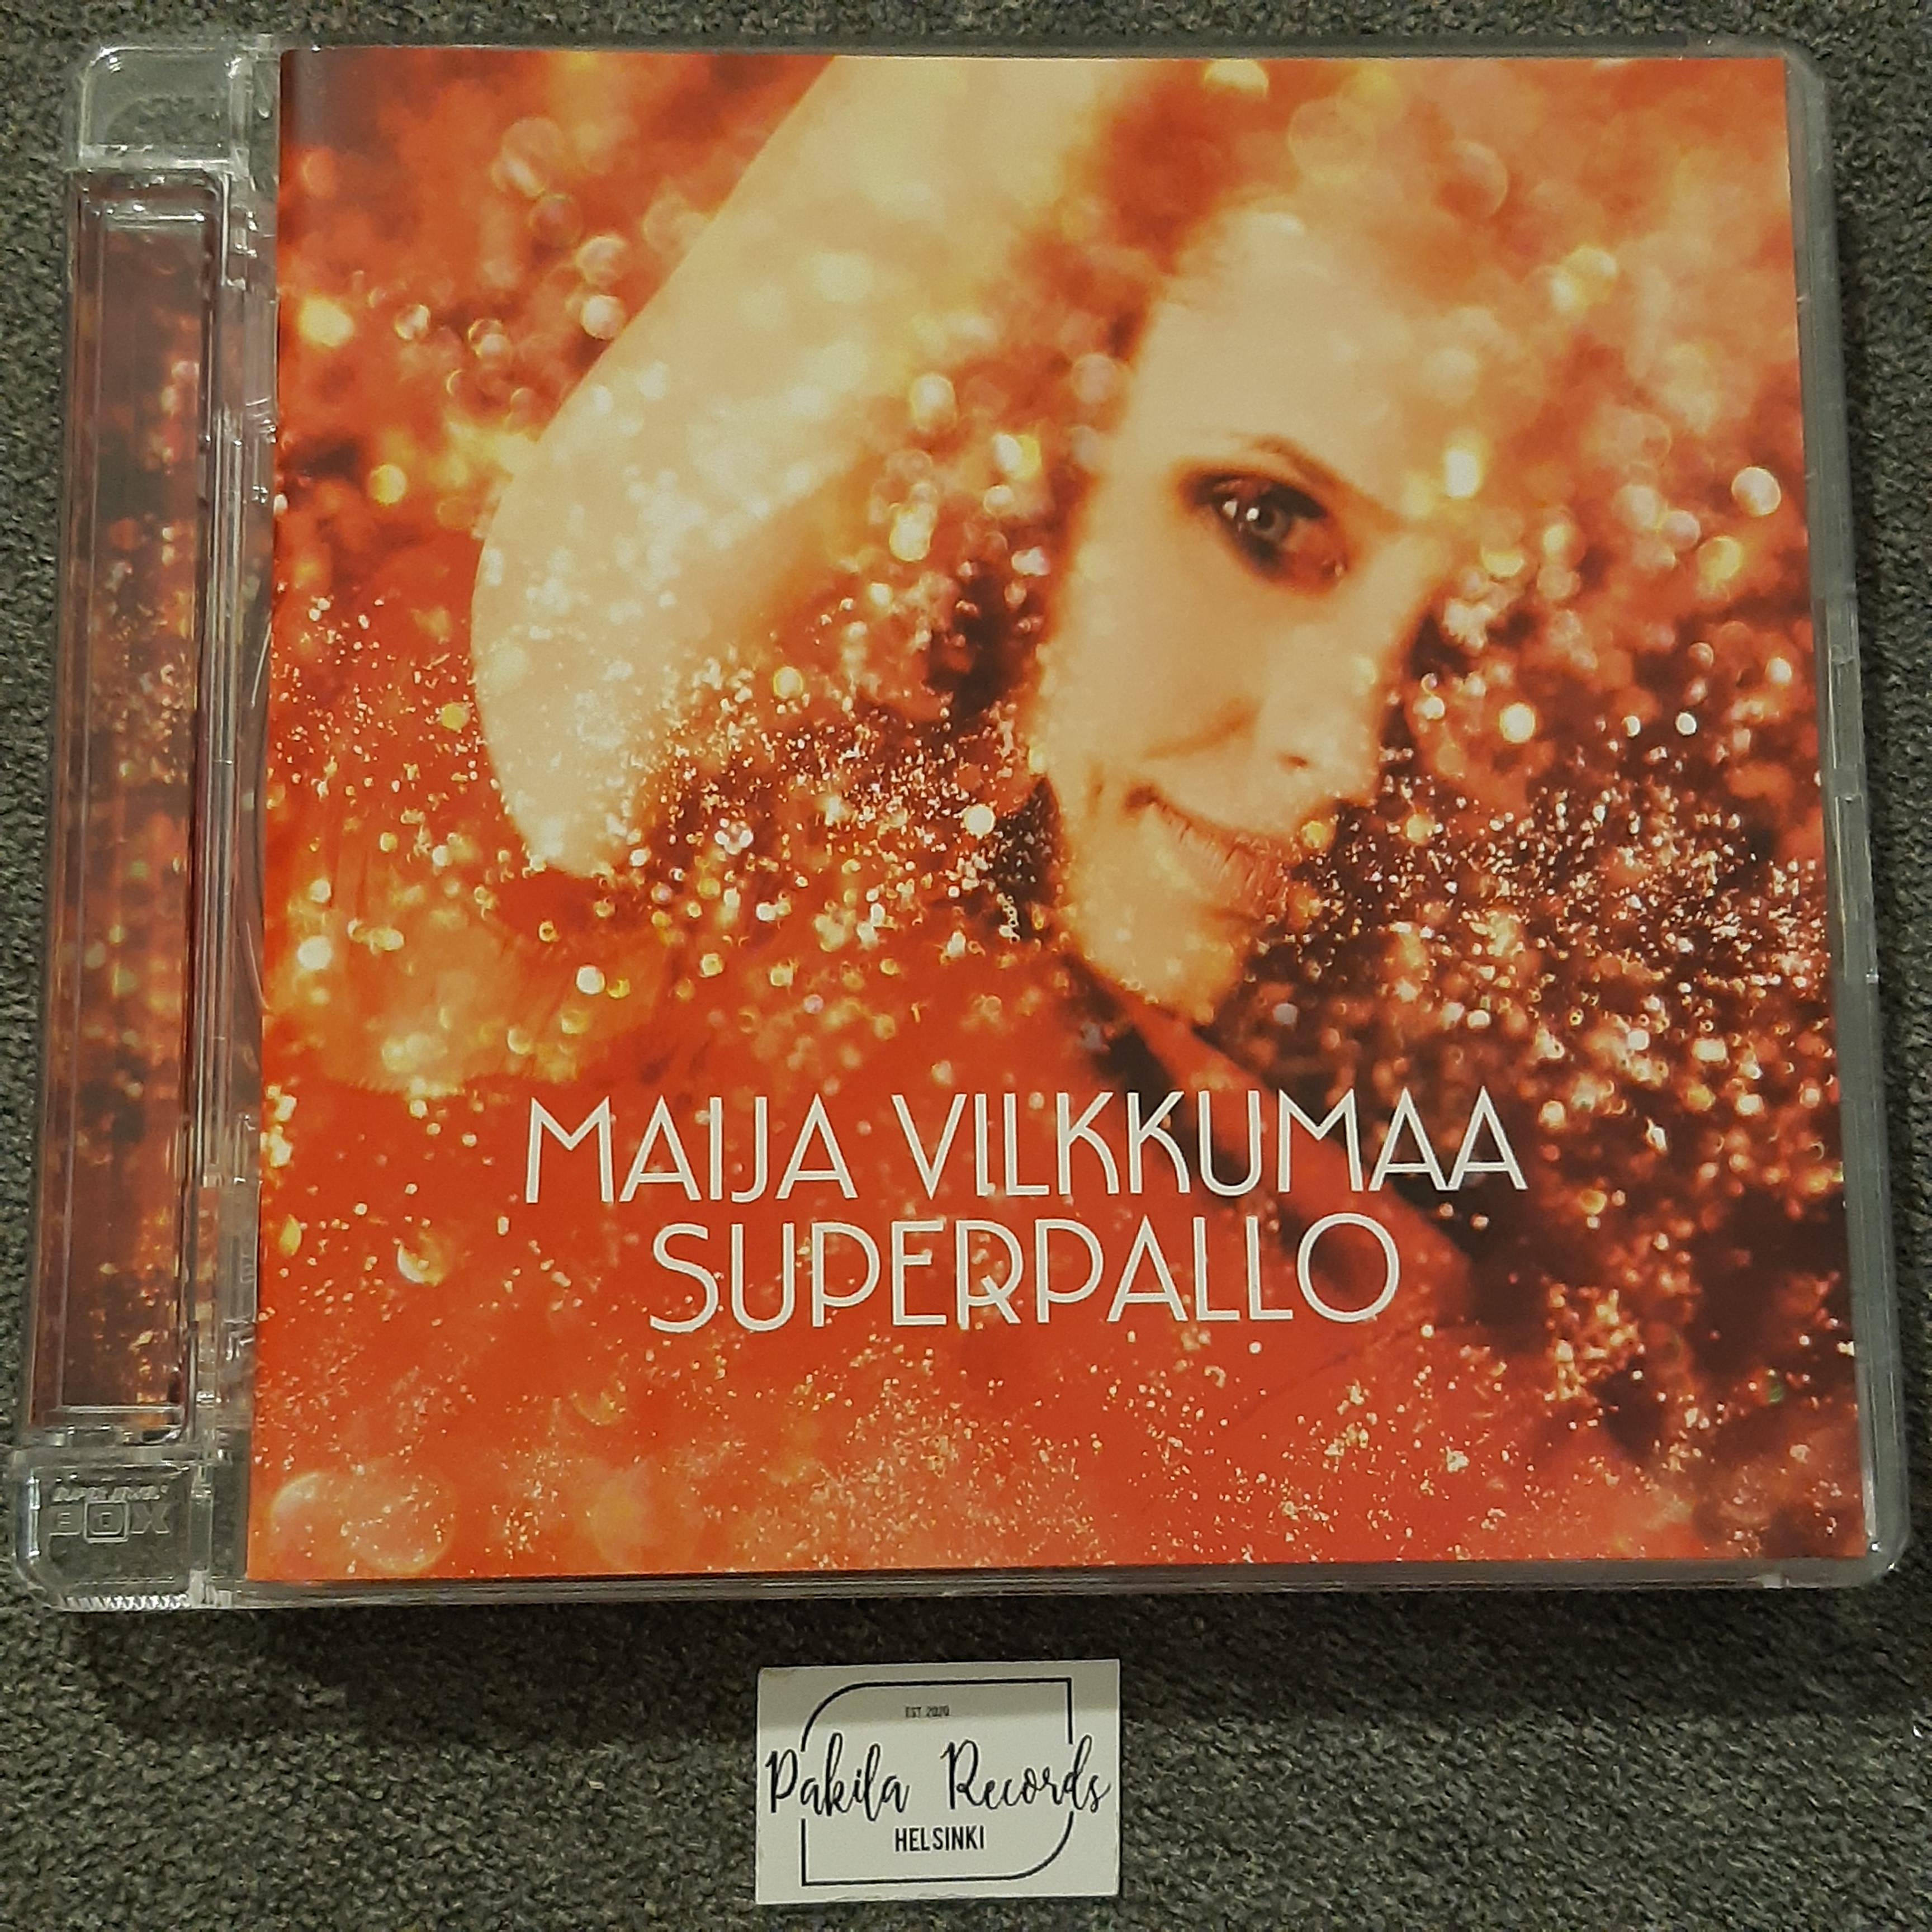 Maija Vilkkumaa - Superpallo - CD (käytetty)